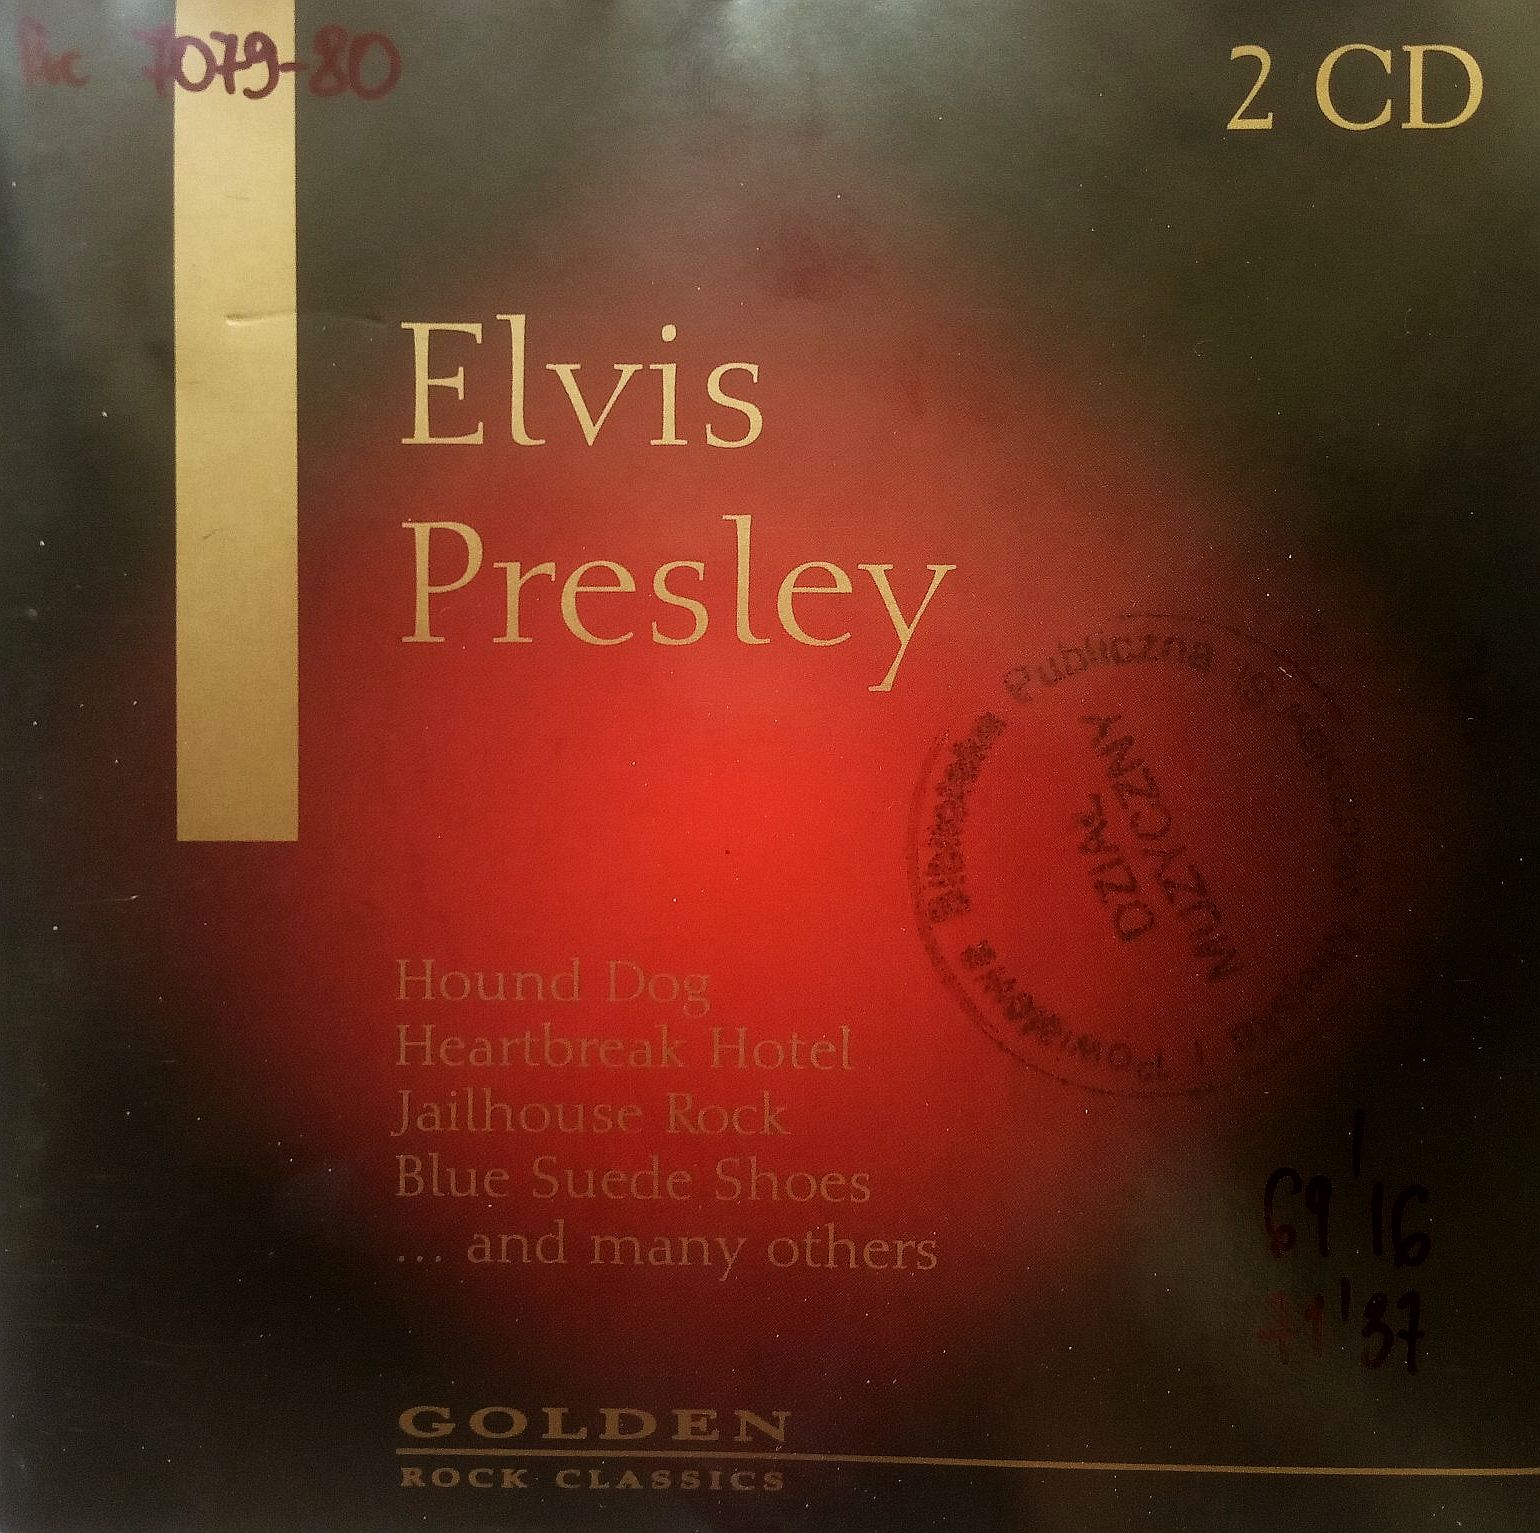 PRESLEY ELVIS – Golden Rock Classics